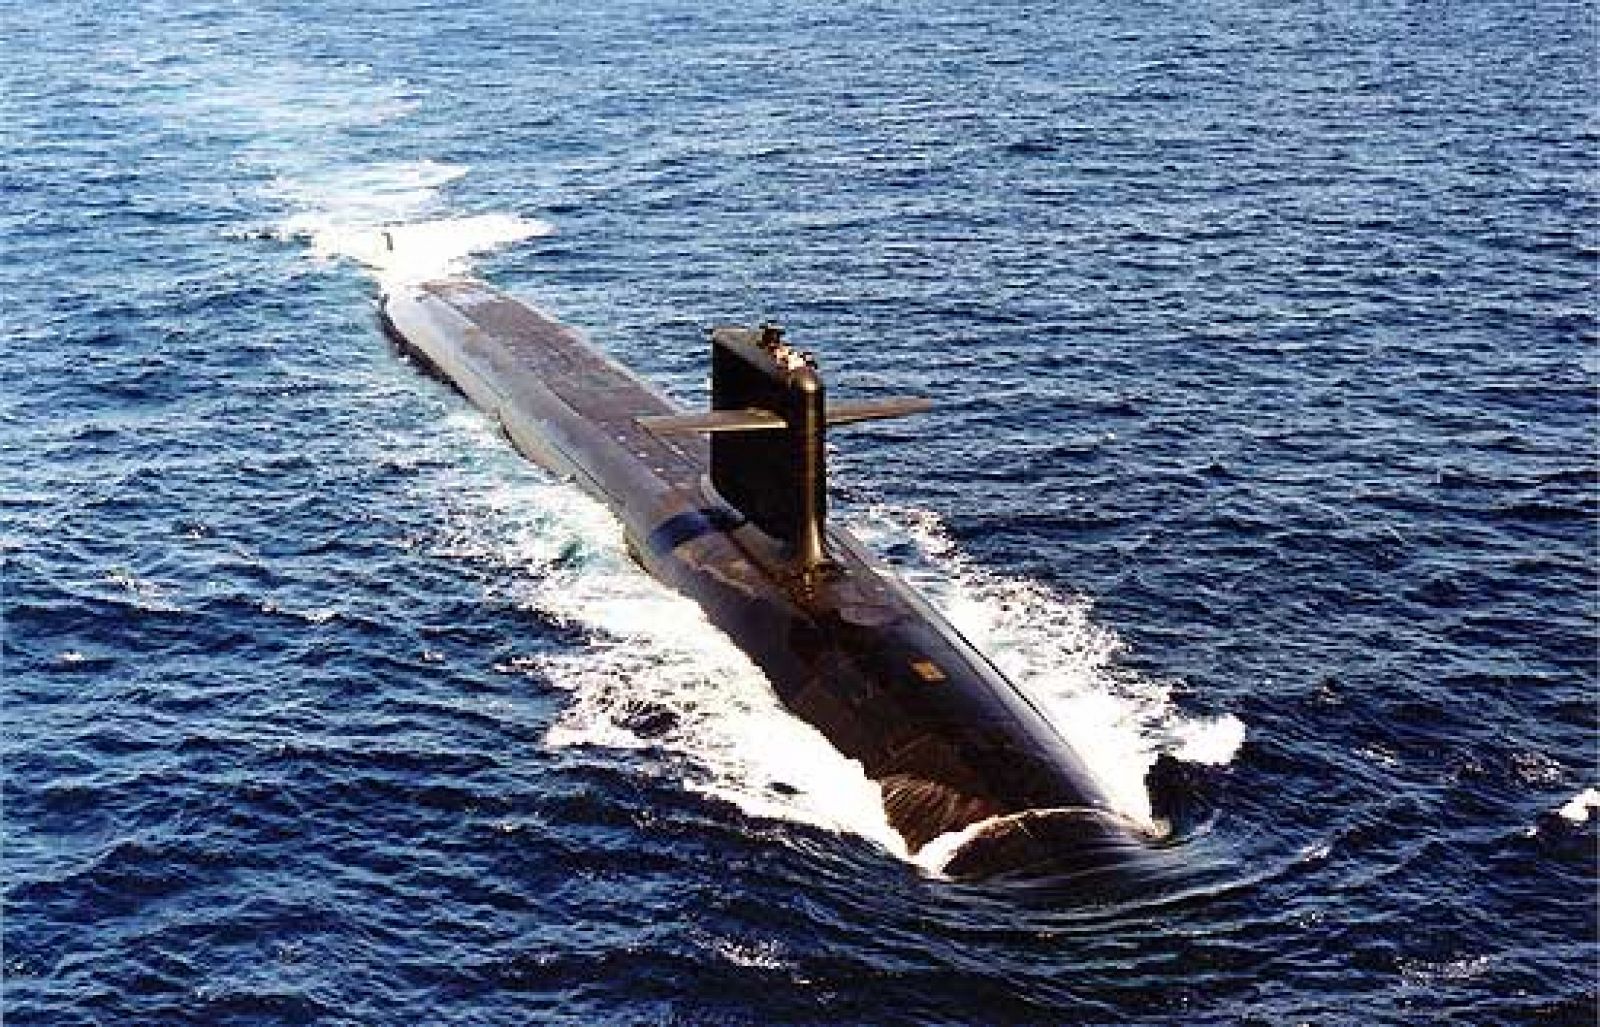 Un submarino británico y otro francés, ambos con misiles nucleares, colisionan en alta mar